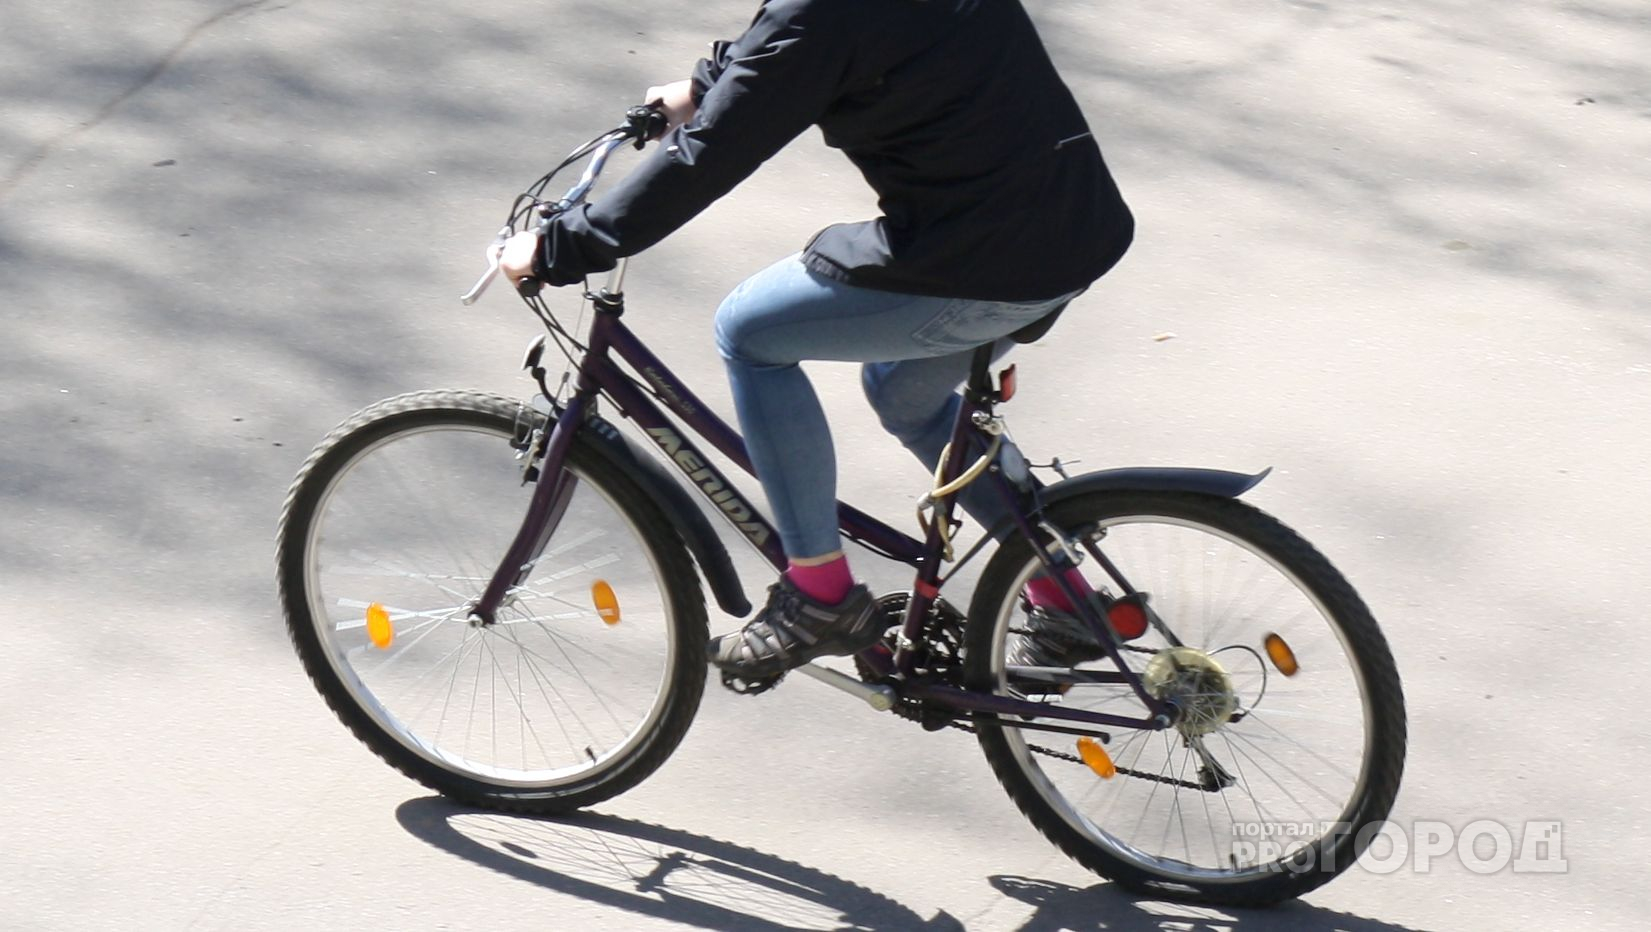 Гастролирующий по Чувашии вор на велосипеде попался из-за технической ошибки